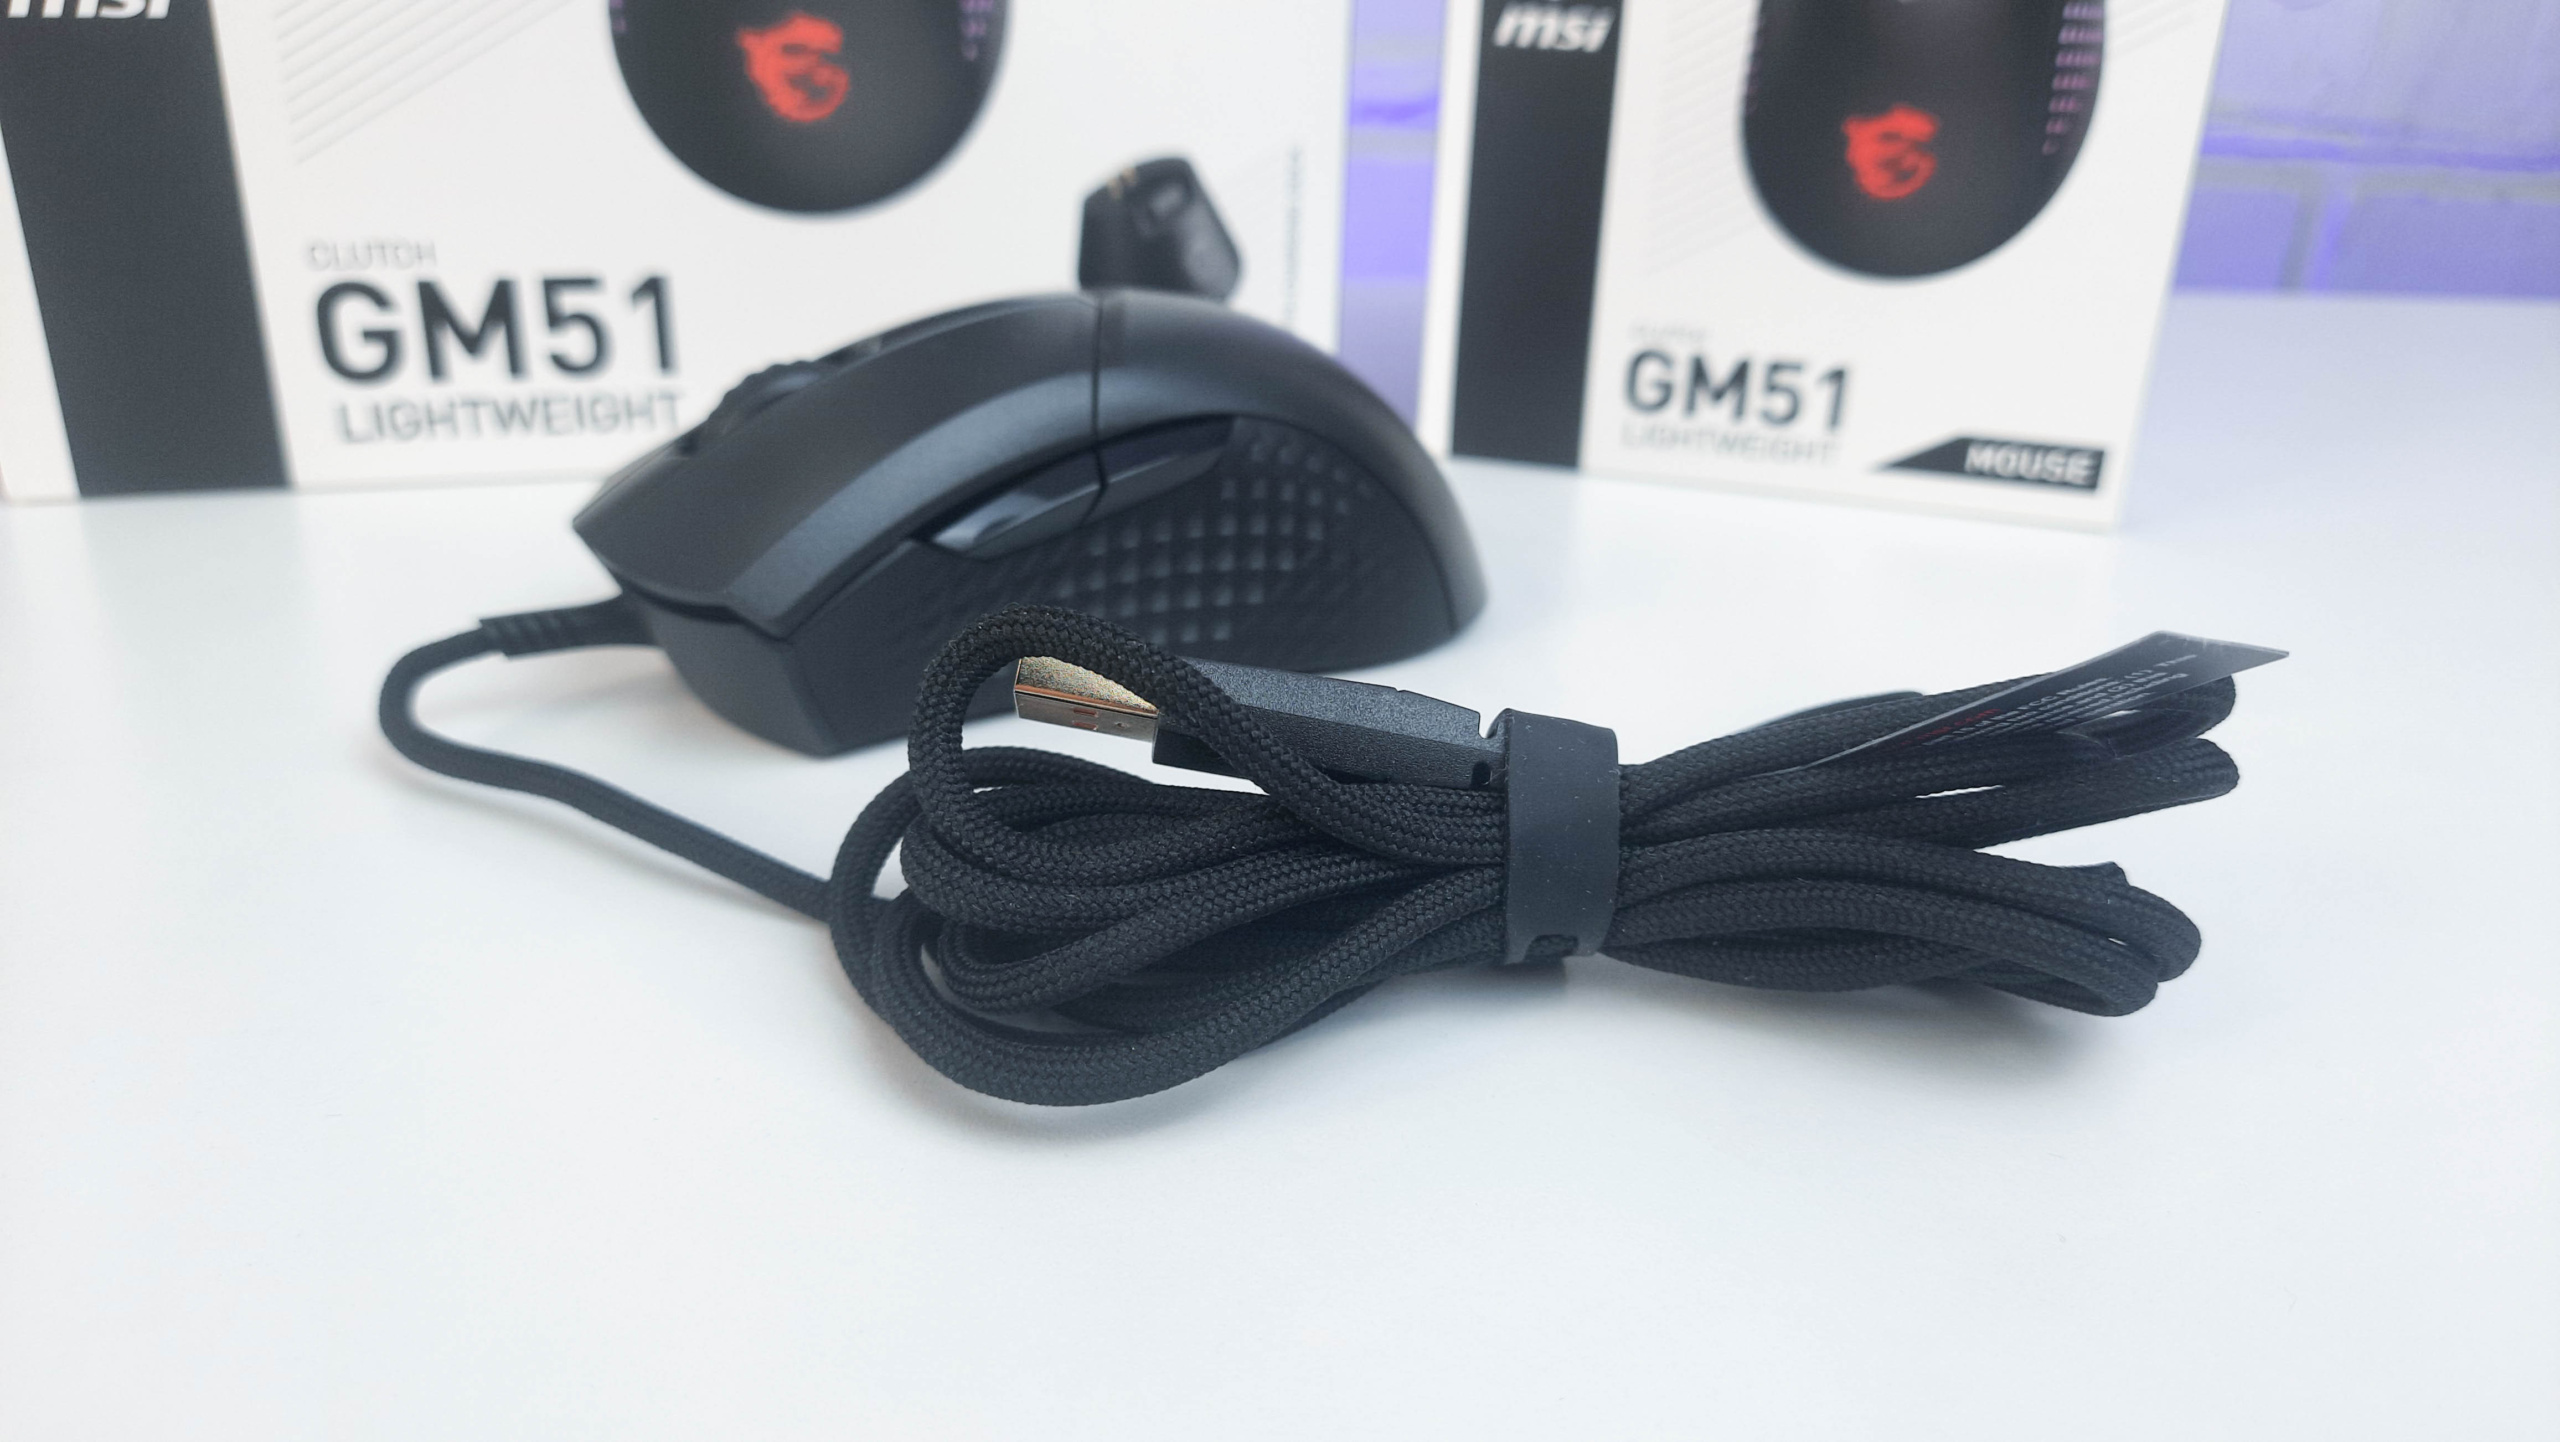 Огляд MSI Clutch GM51 та GM51 Wireless: ігрові миші з чудовою ергономікою, RGB-підсвічуванням і максимальною роздільною здатністю 26 000 DPI